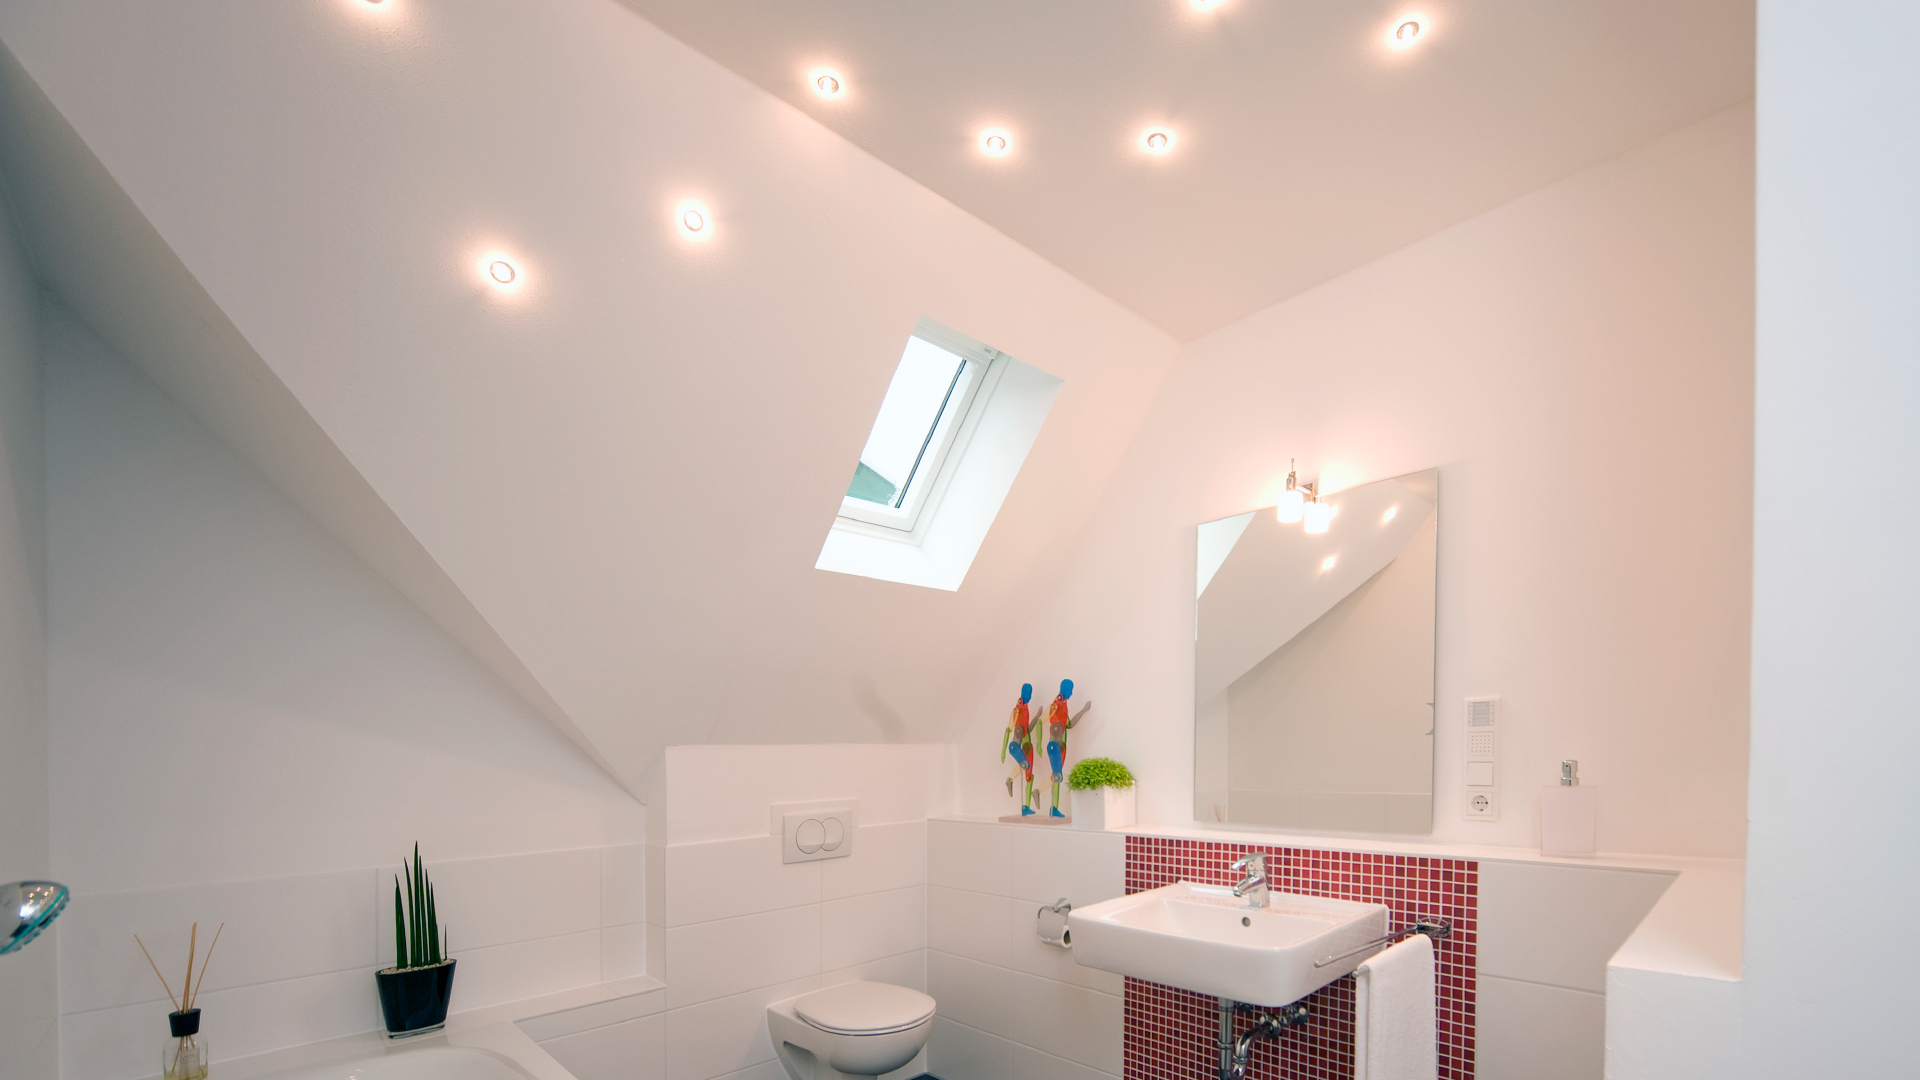 Badezimmer mit Beleuchtung in der Dachschräge.